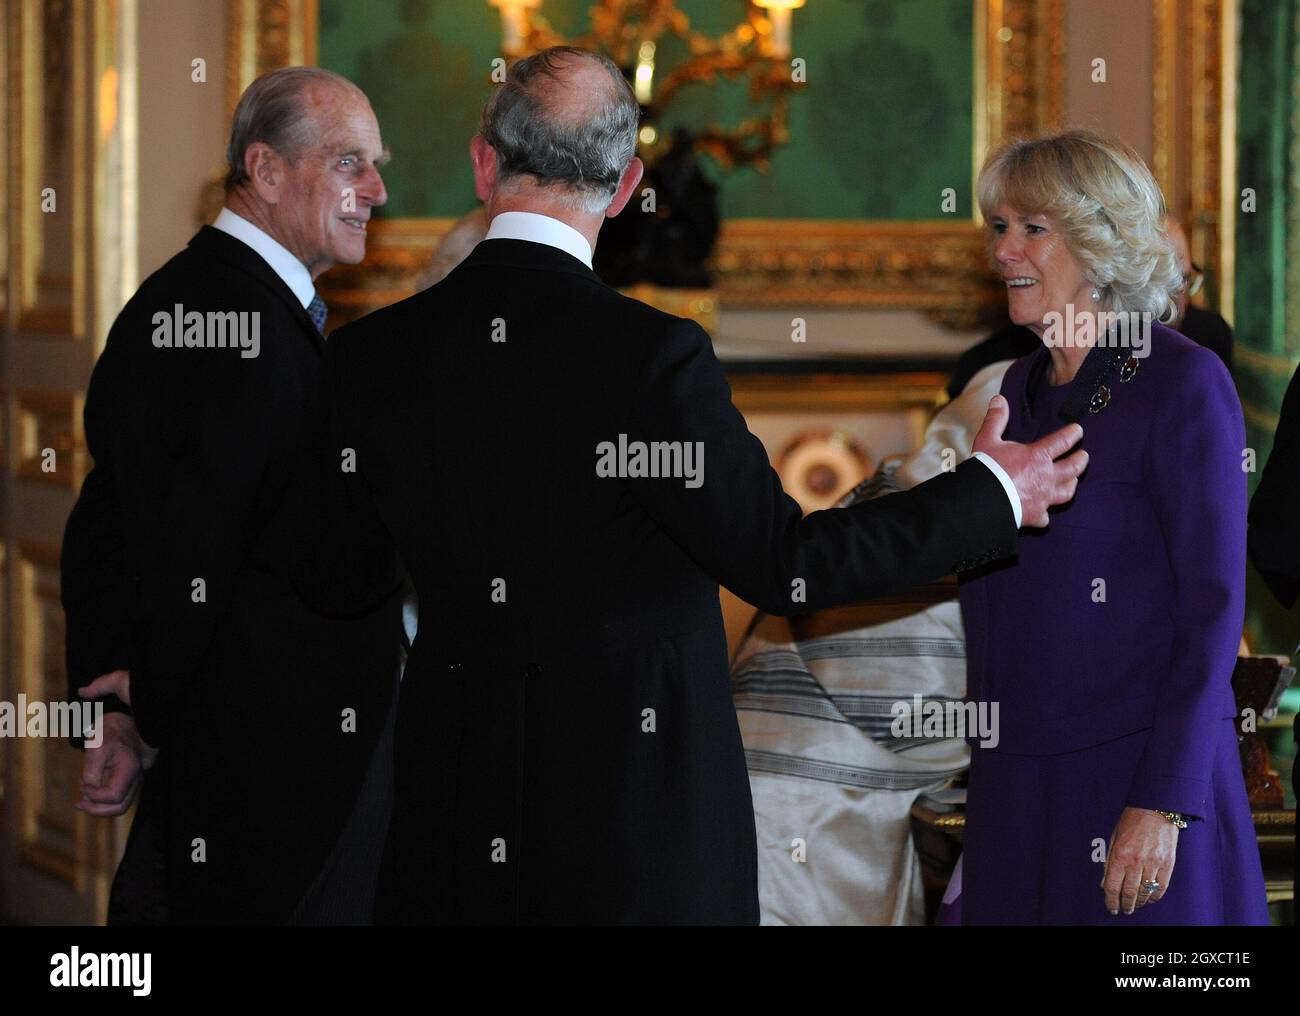 Le Prince Charles, Prince de Galles, Camilla, Duchesse de Cornouailles et le Prince Philip, Duc d'Édimbourg, voient une exposition d'objets dans la salle de dessin blanc du château de Windsor au début d'une visite d'État par le Président de l'Inde, Pratibha Patil, le 27 octobre 2009. Banque D'Images